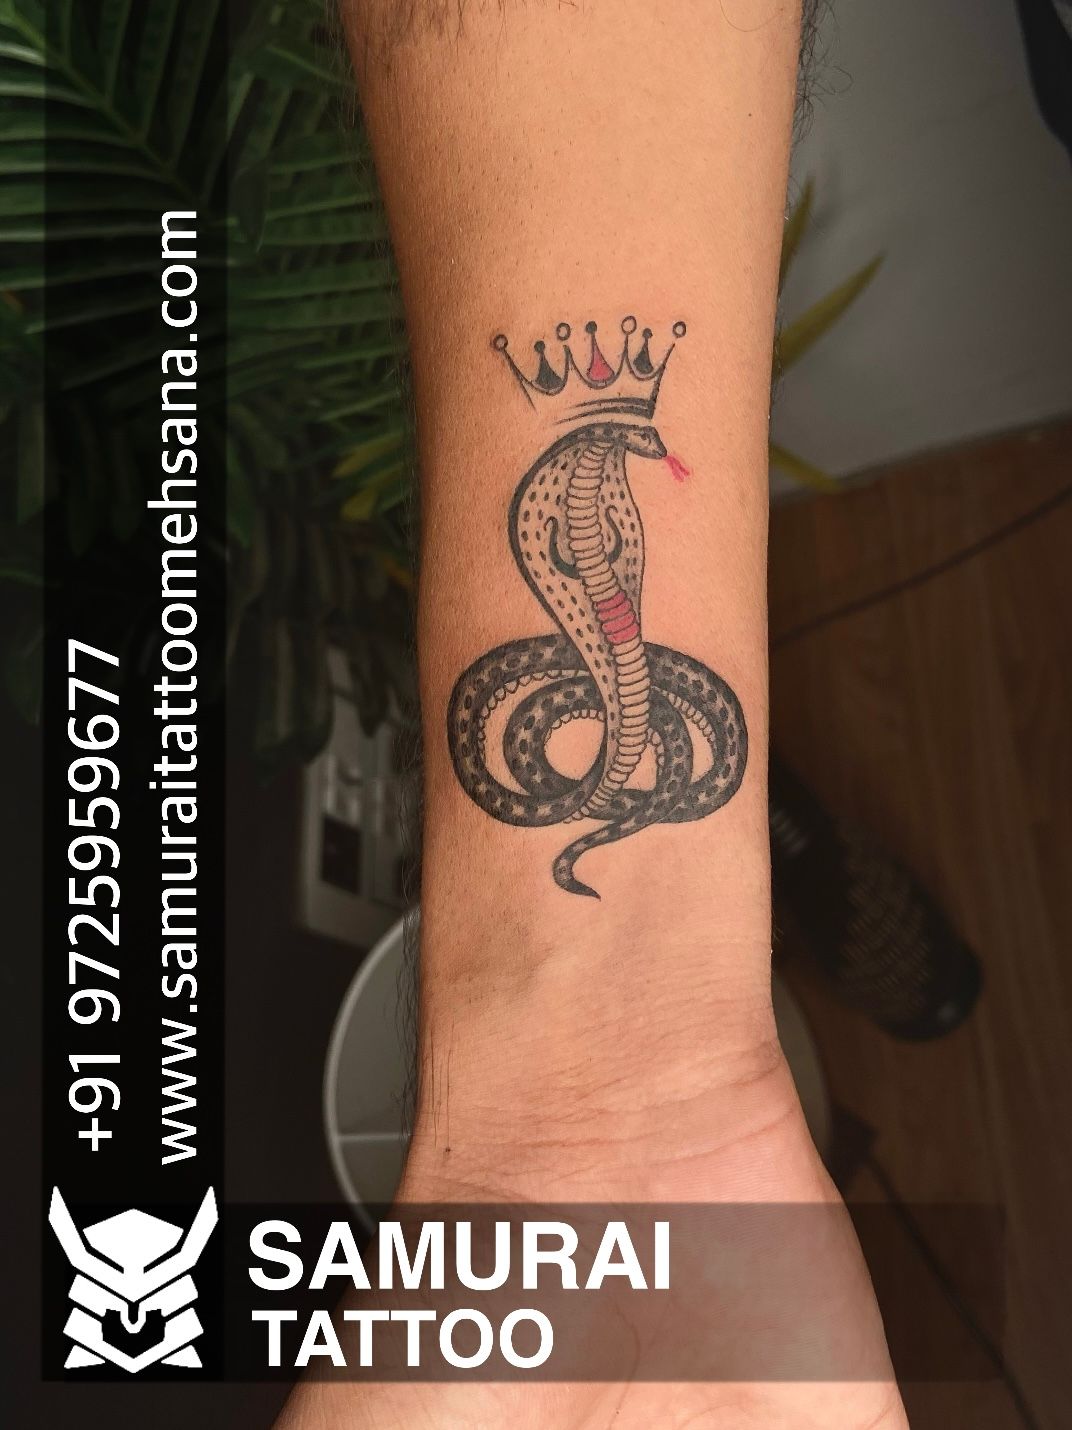 Tatuagens ornamentais e mandalas: 7 artistas incríveis! - Blog Tattoo2me